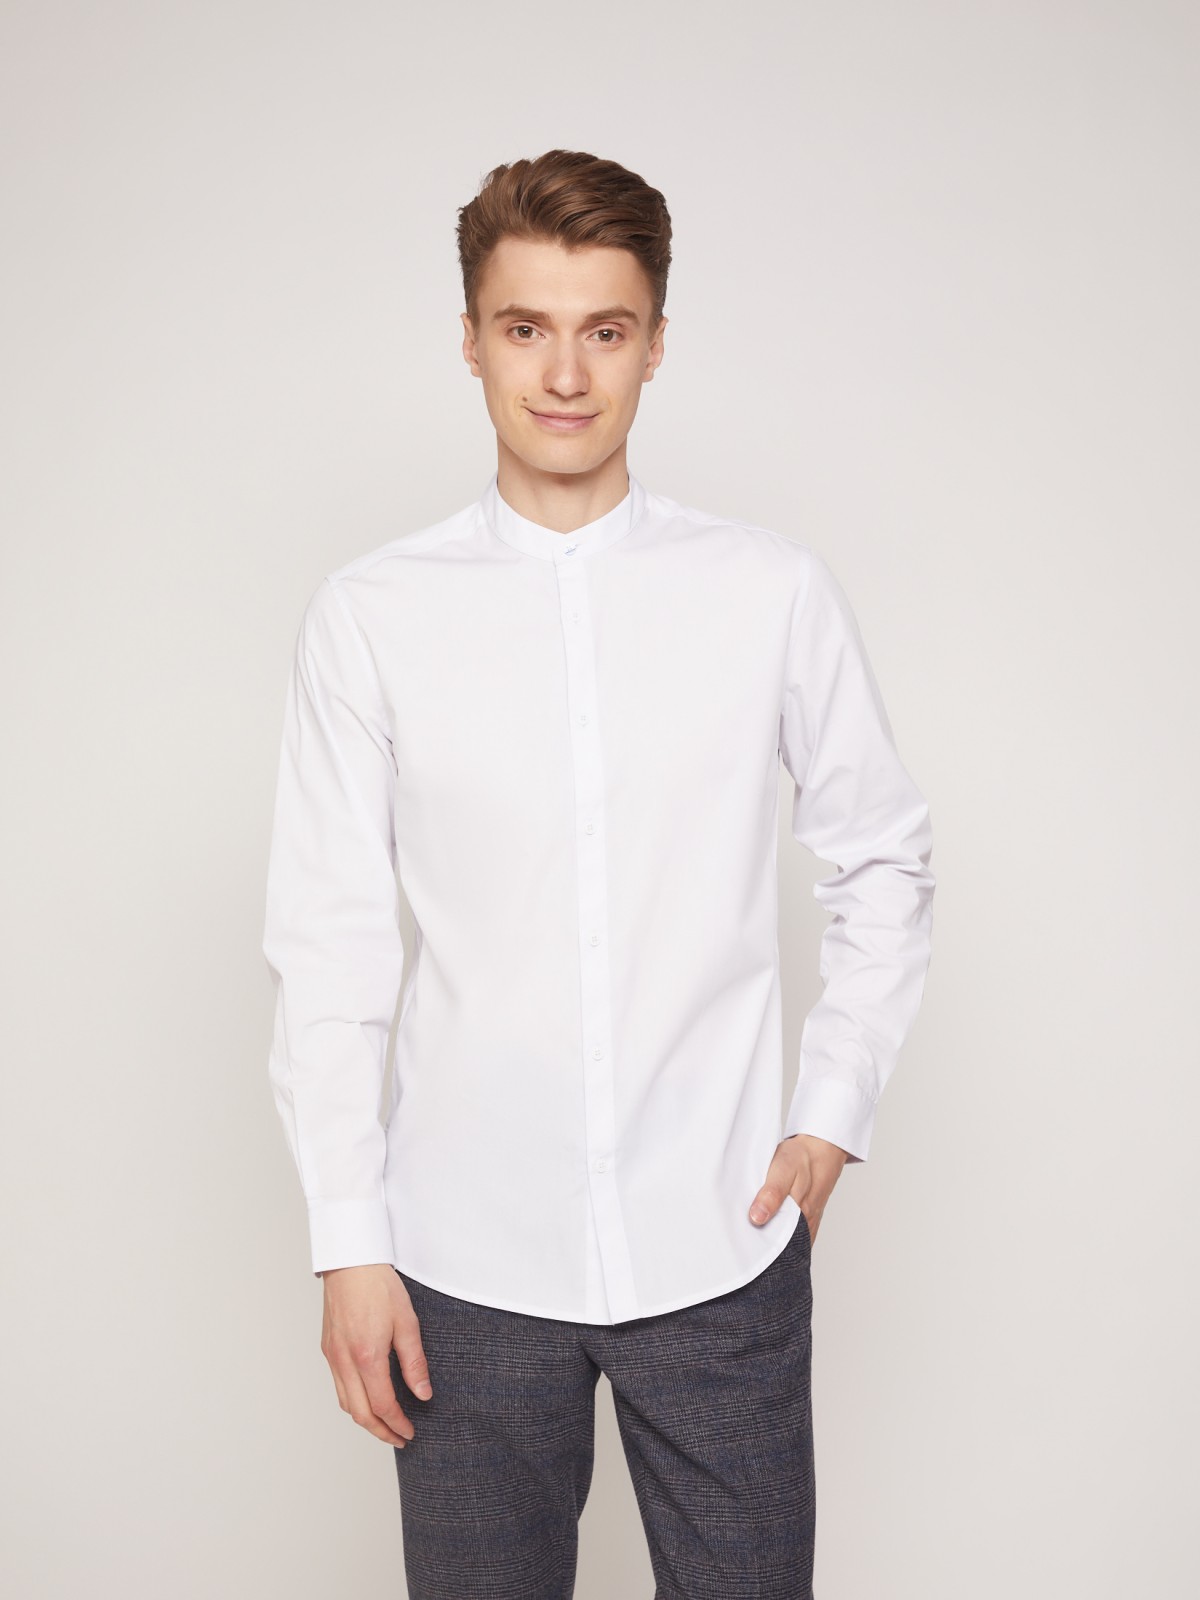 Рубашка с воротником-стойкой zolla 21132217Y012, цвет белый, размер XS - фото 2